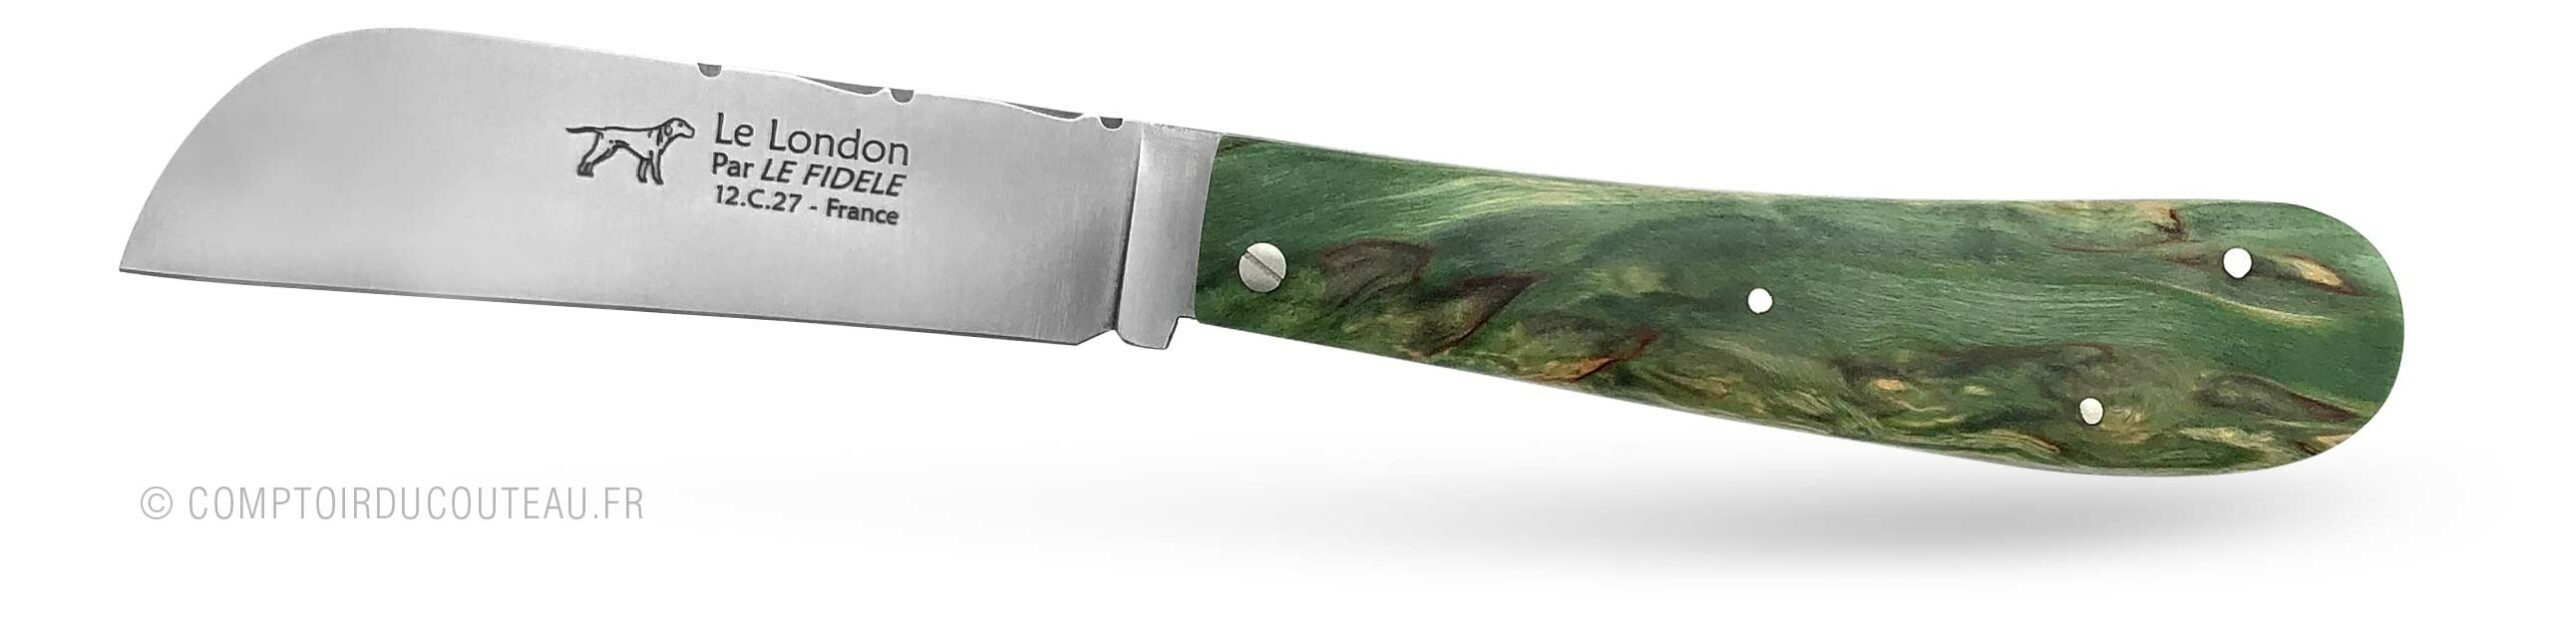 couteau breton le London vert en bouleau stabilisé